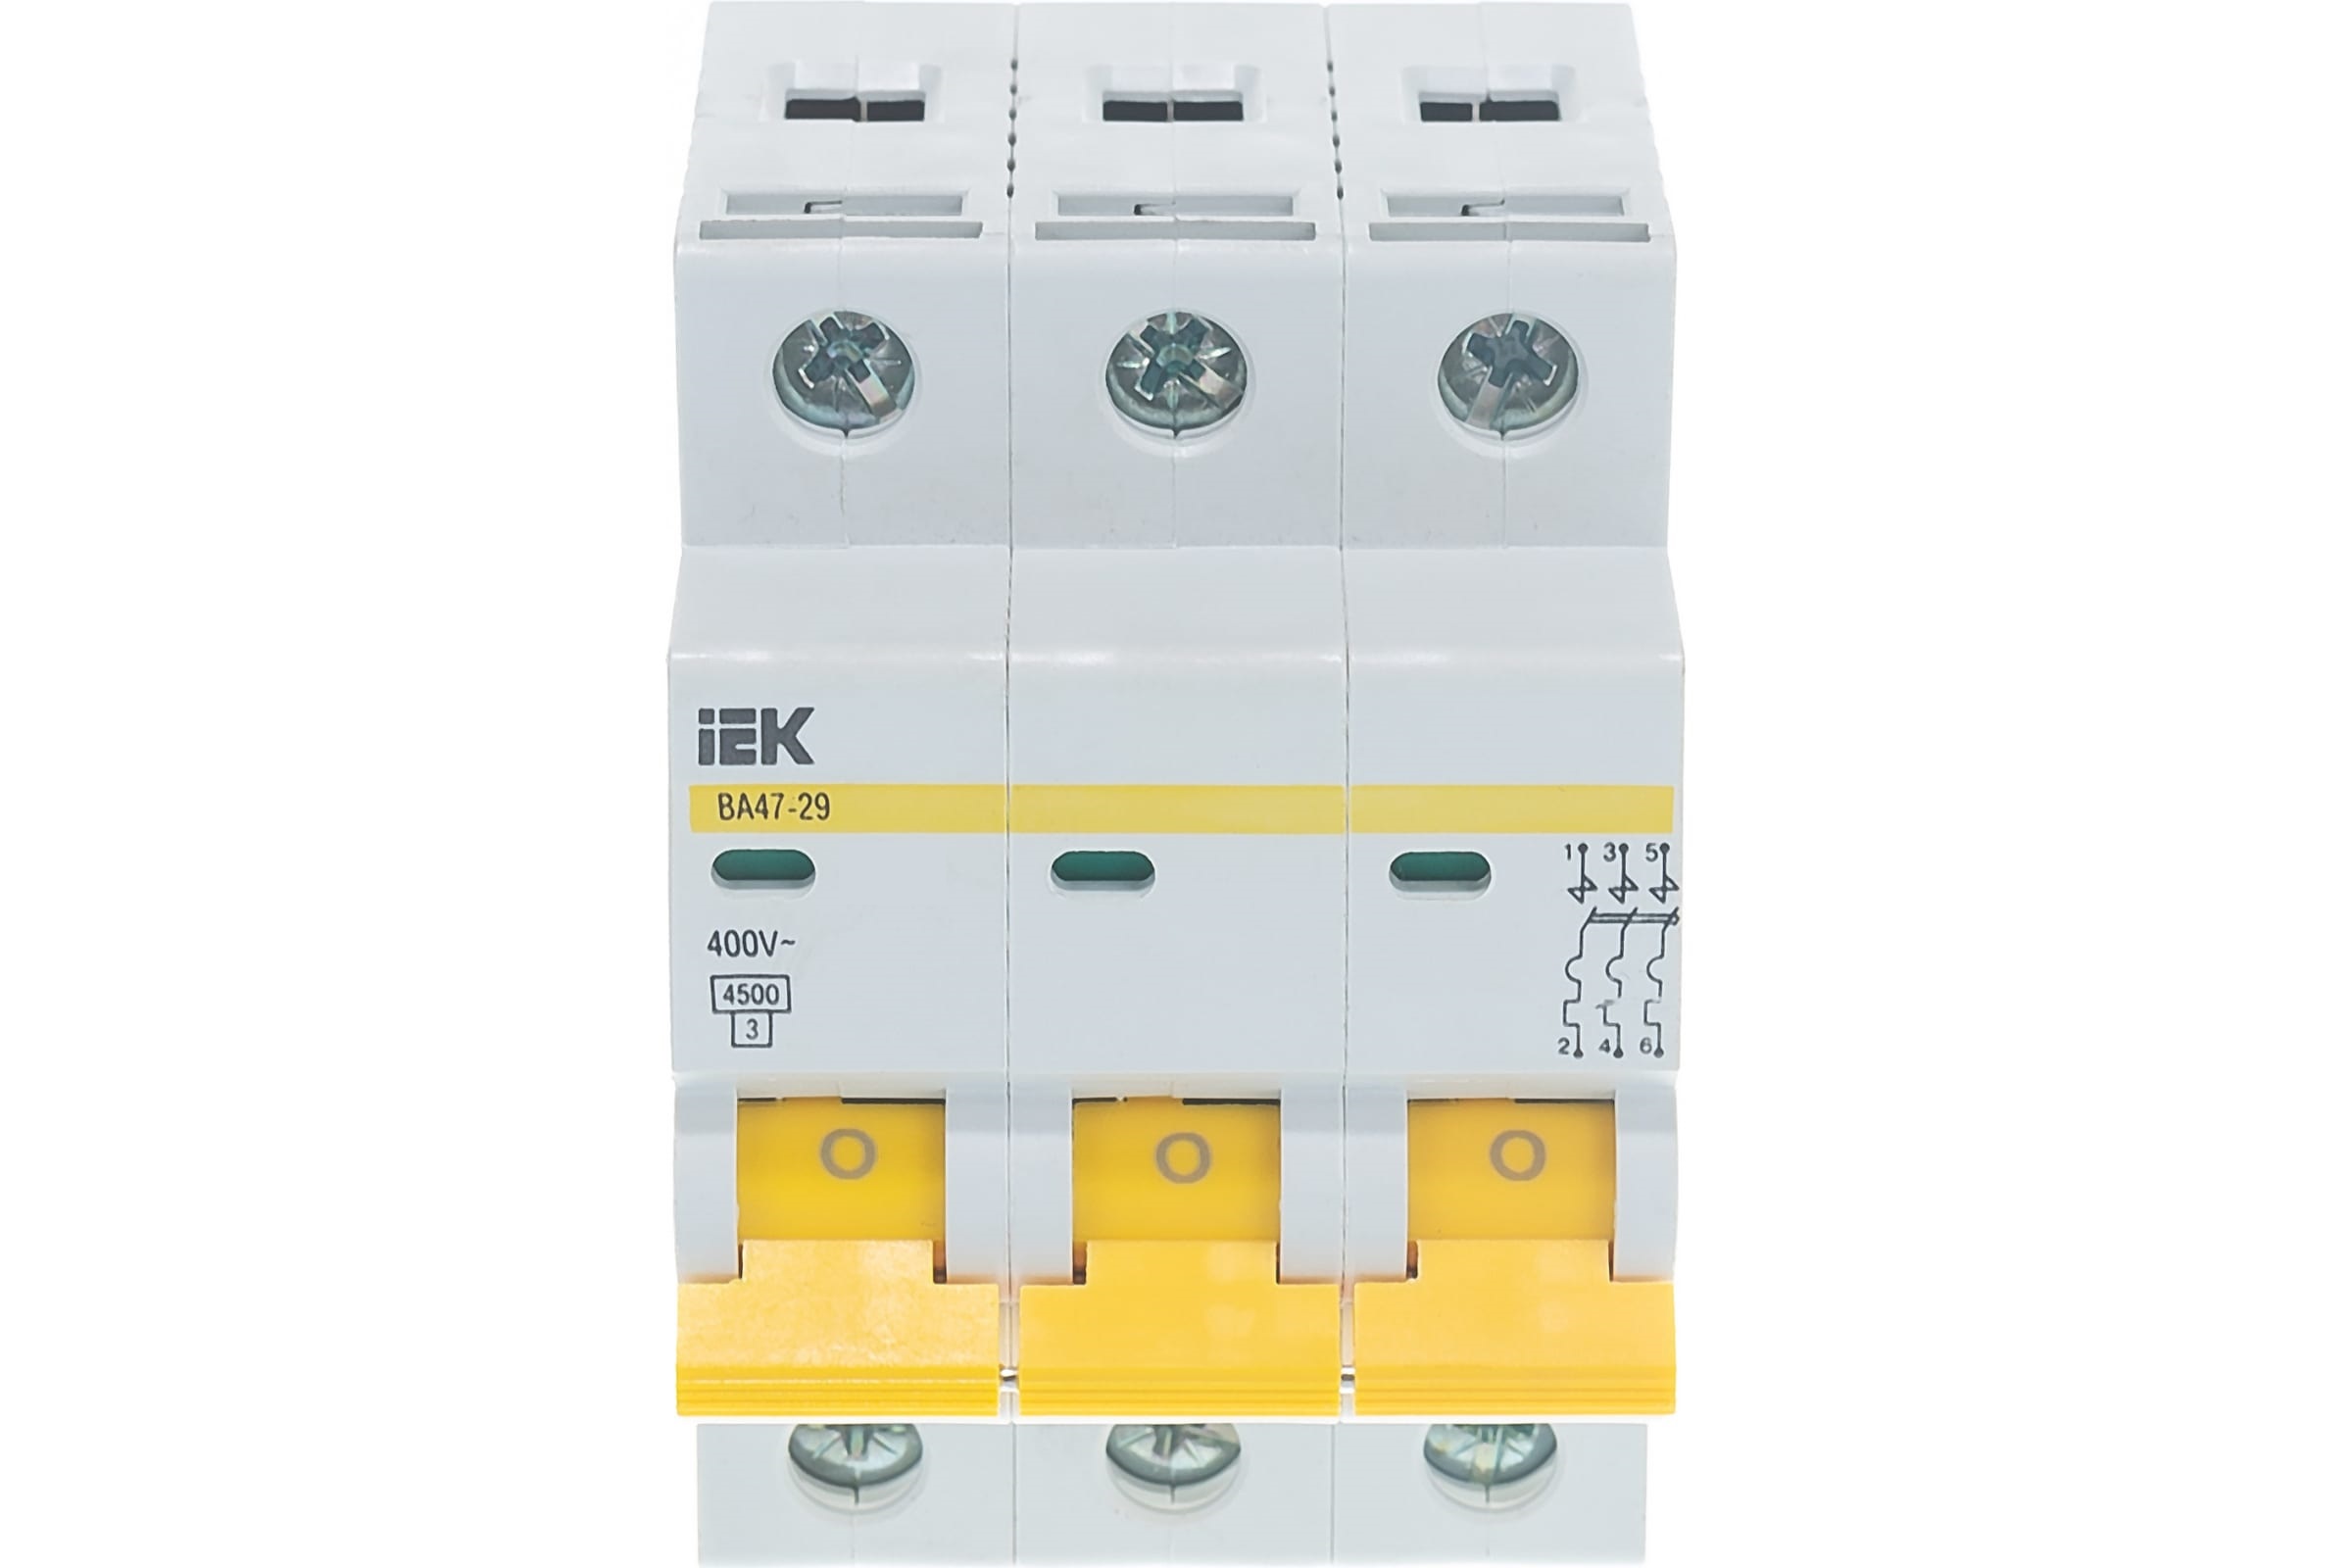 Ва 47 29 3. Автоматический выключатель IEK ва47-29 3p. Автоматический выключатель ва 47-29 3р 20а 4.5 ка с ИЭК. Выключатель автоматический ва47-29 3р. Ва47-29 3р 10а 4,5ка с IEK.